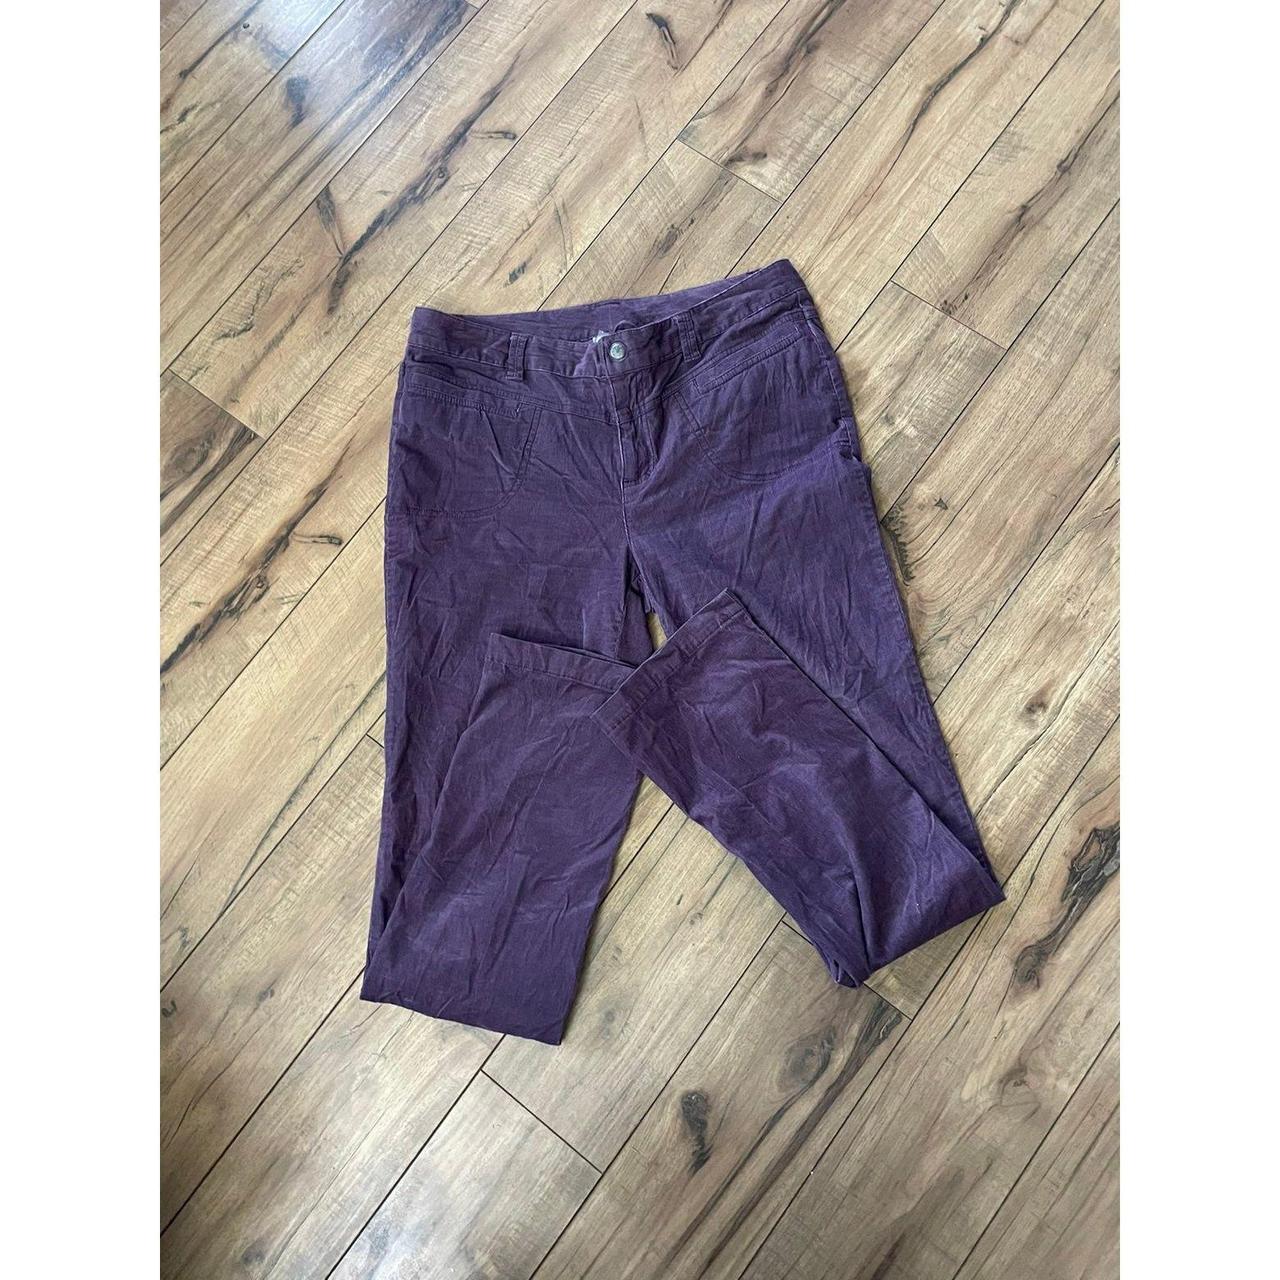 Athleta size 10 purple corduroy pants in nice - Depop